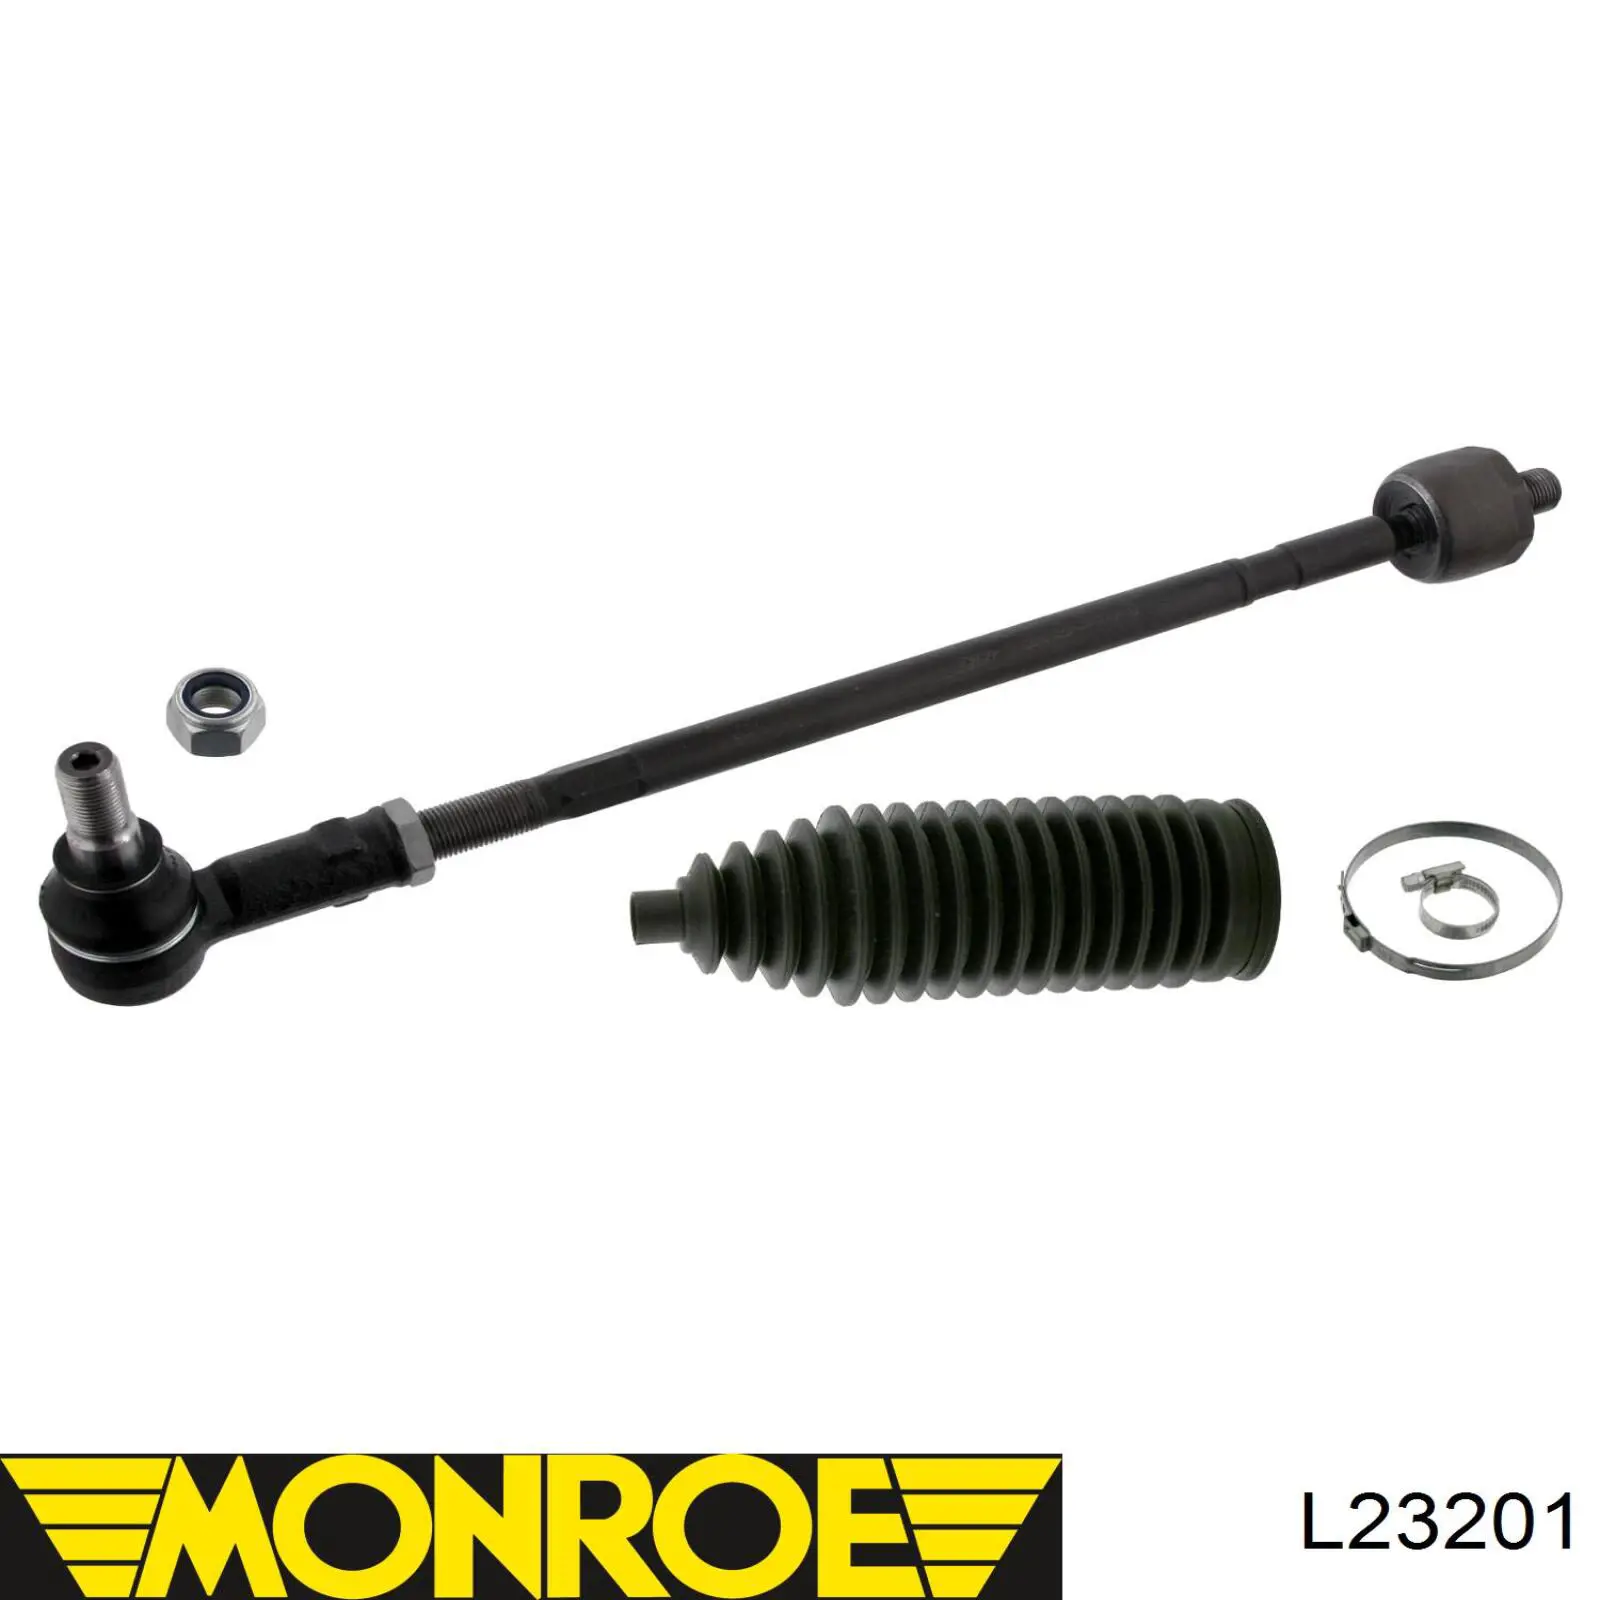 L23201 Monroe barra de acoplamiento